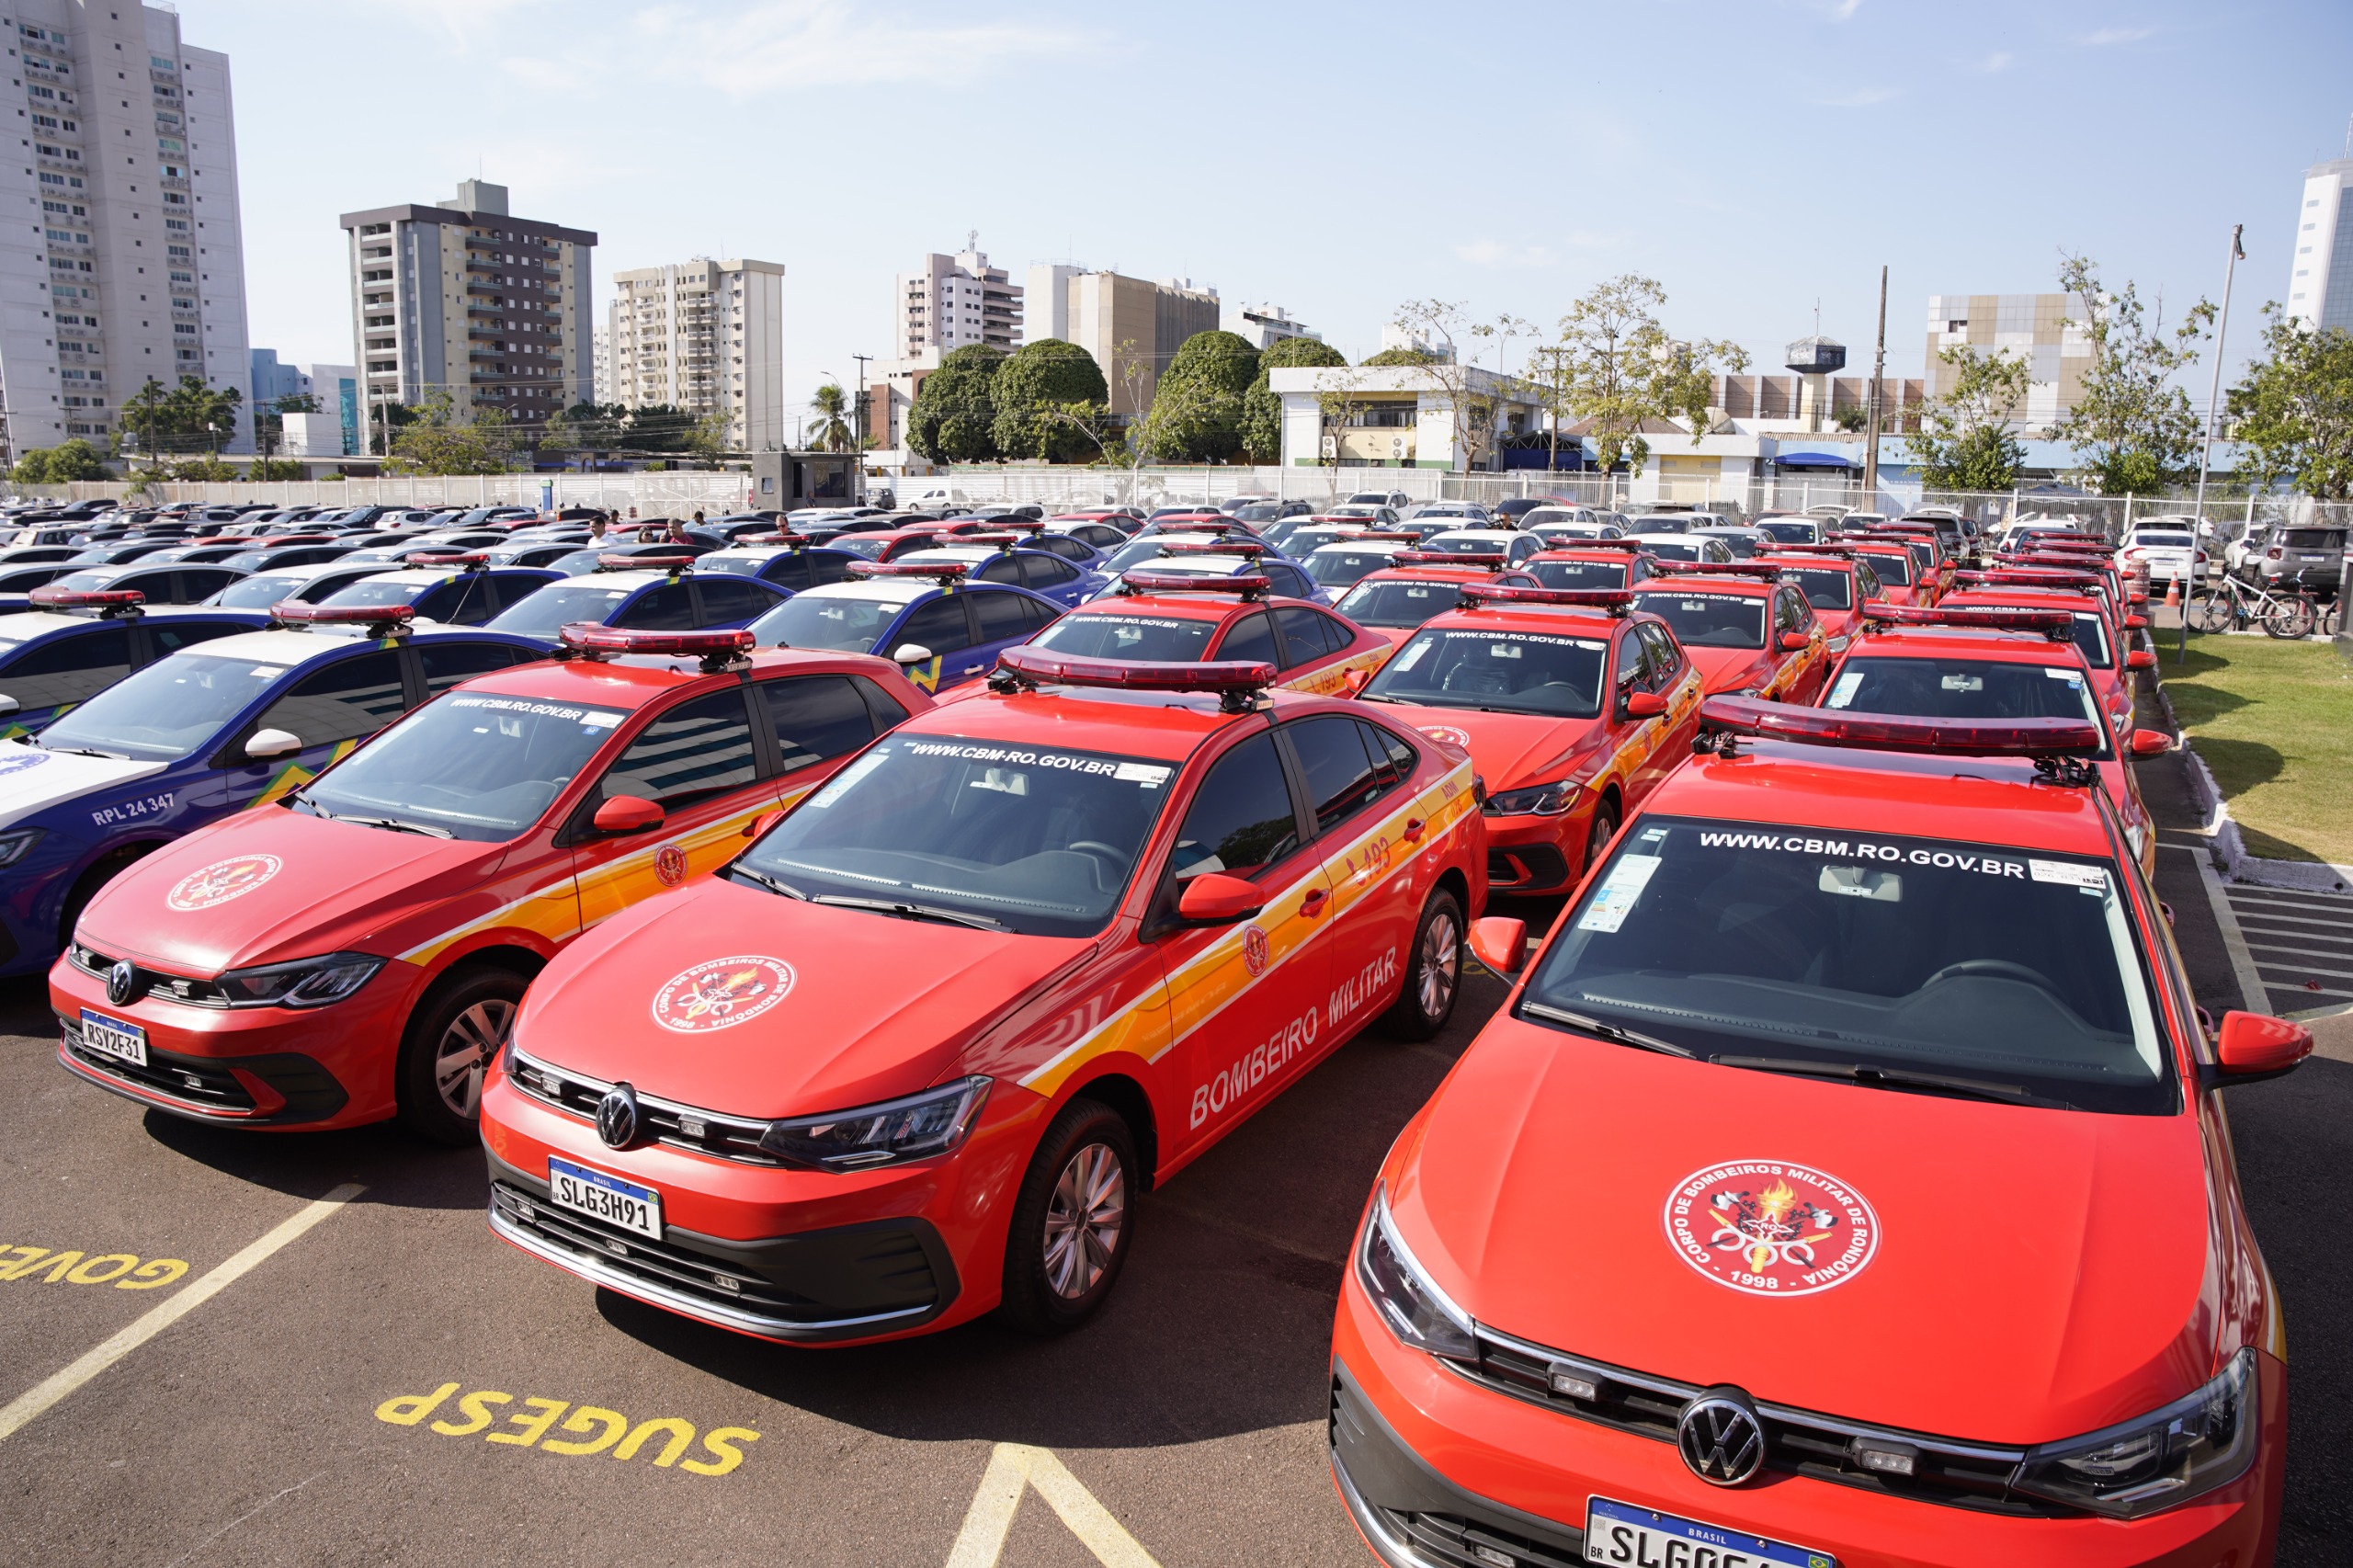 Governo de RO reforça Segurança Pública com entrega de 241 novos veículos - News Rondônia